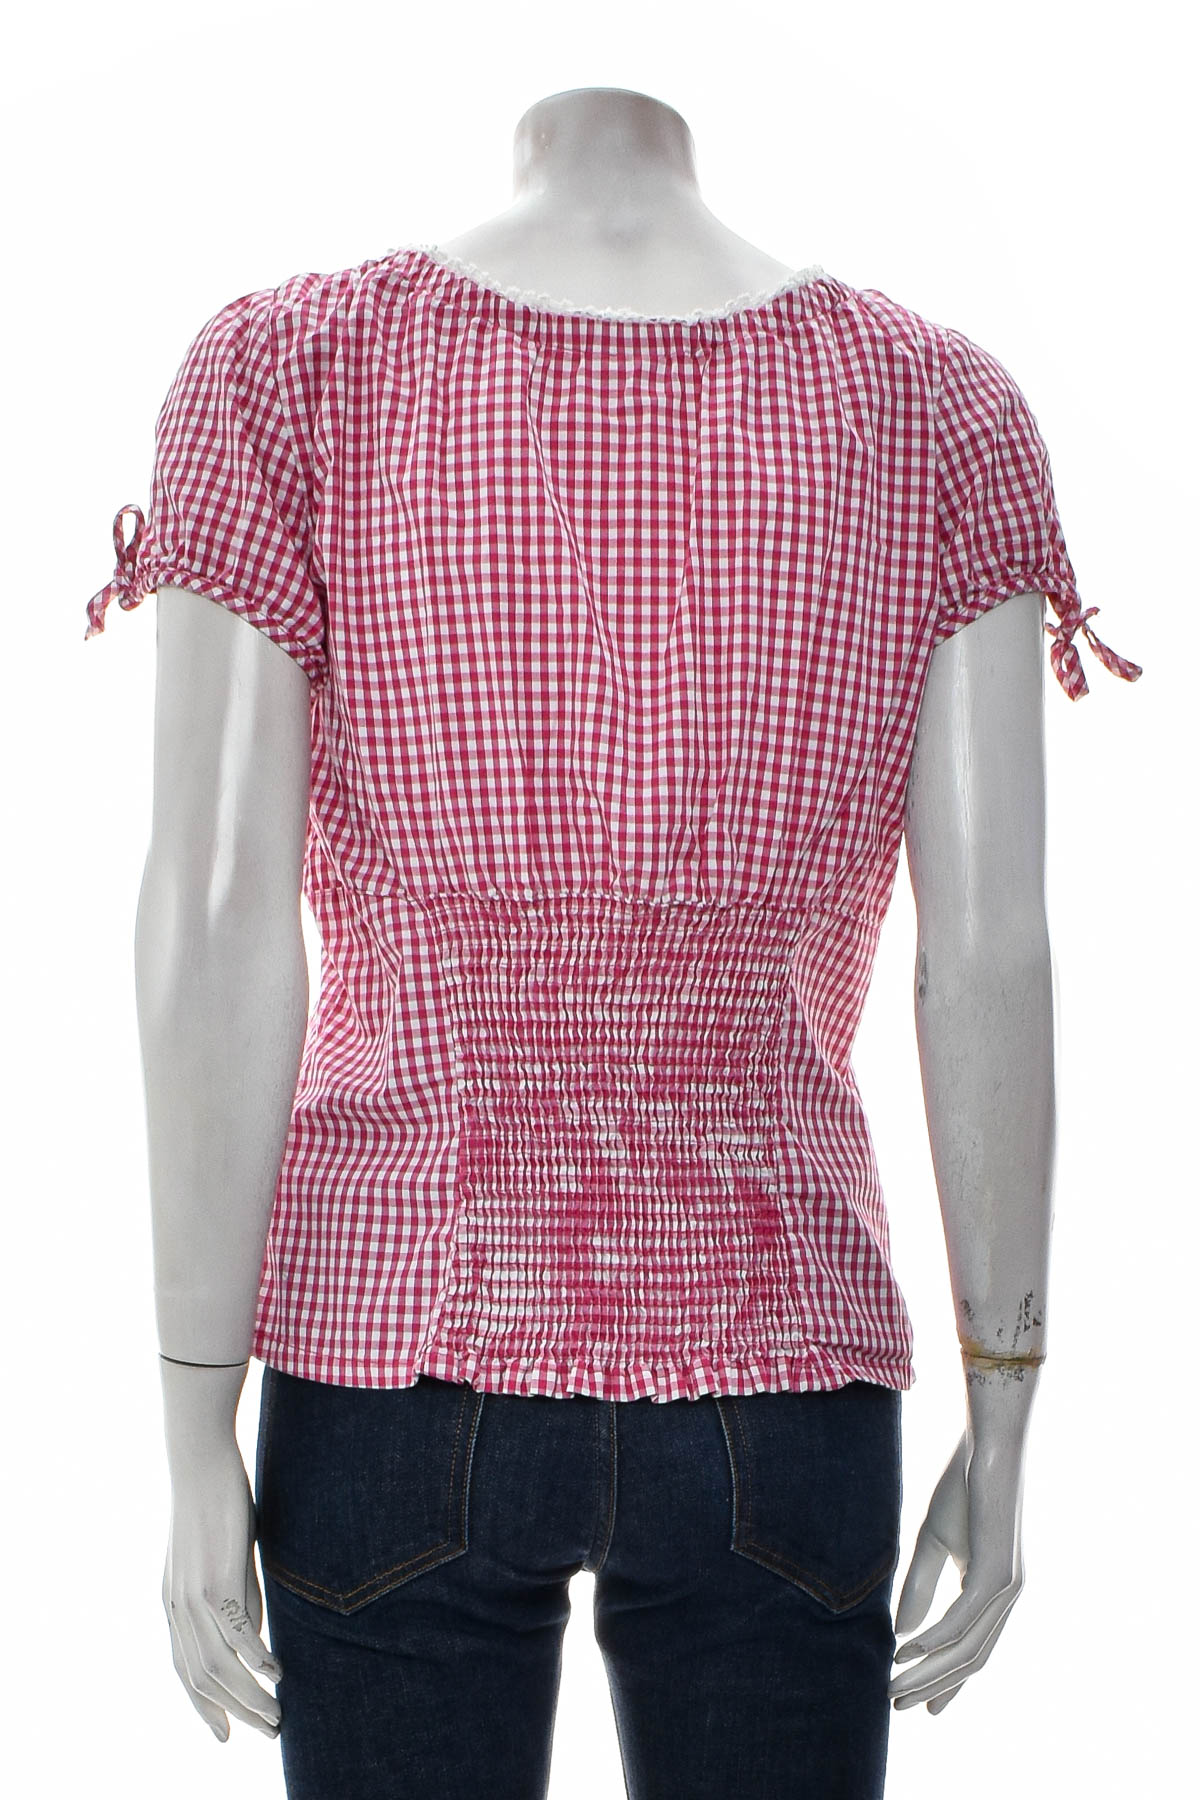 Γυναικείο πουκάμισο - Waldschutz - 1